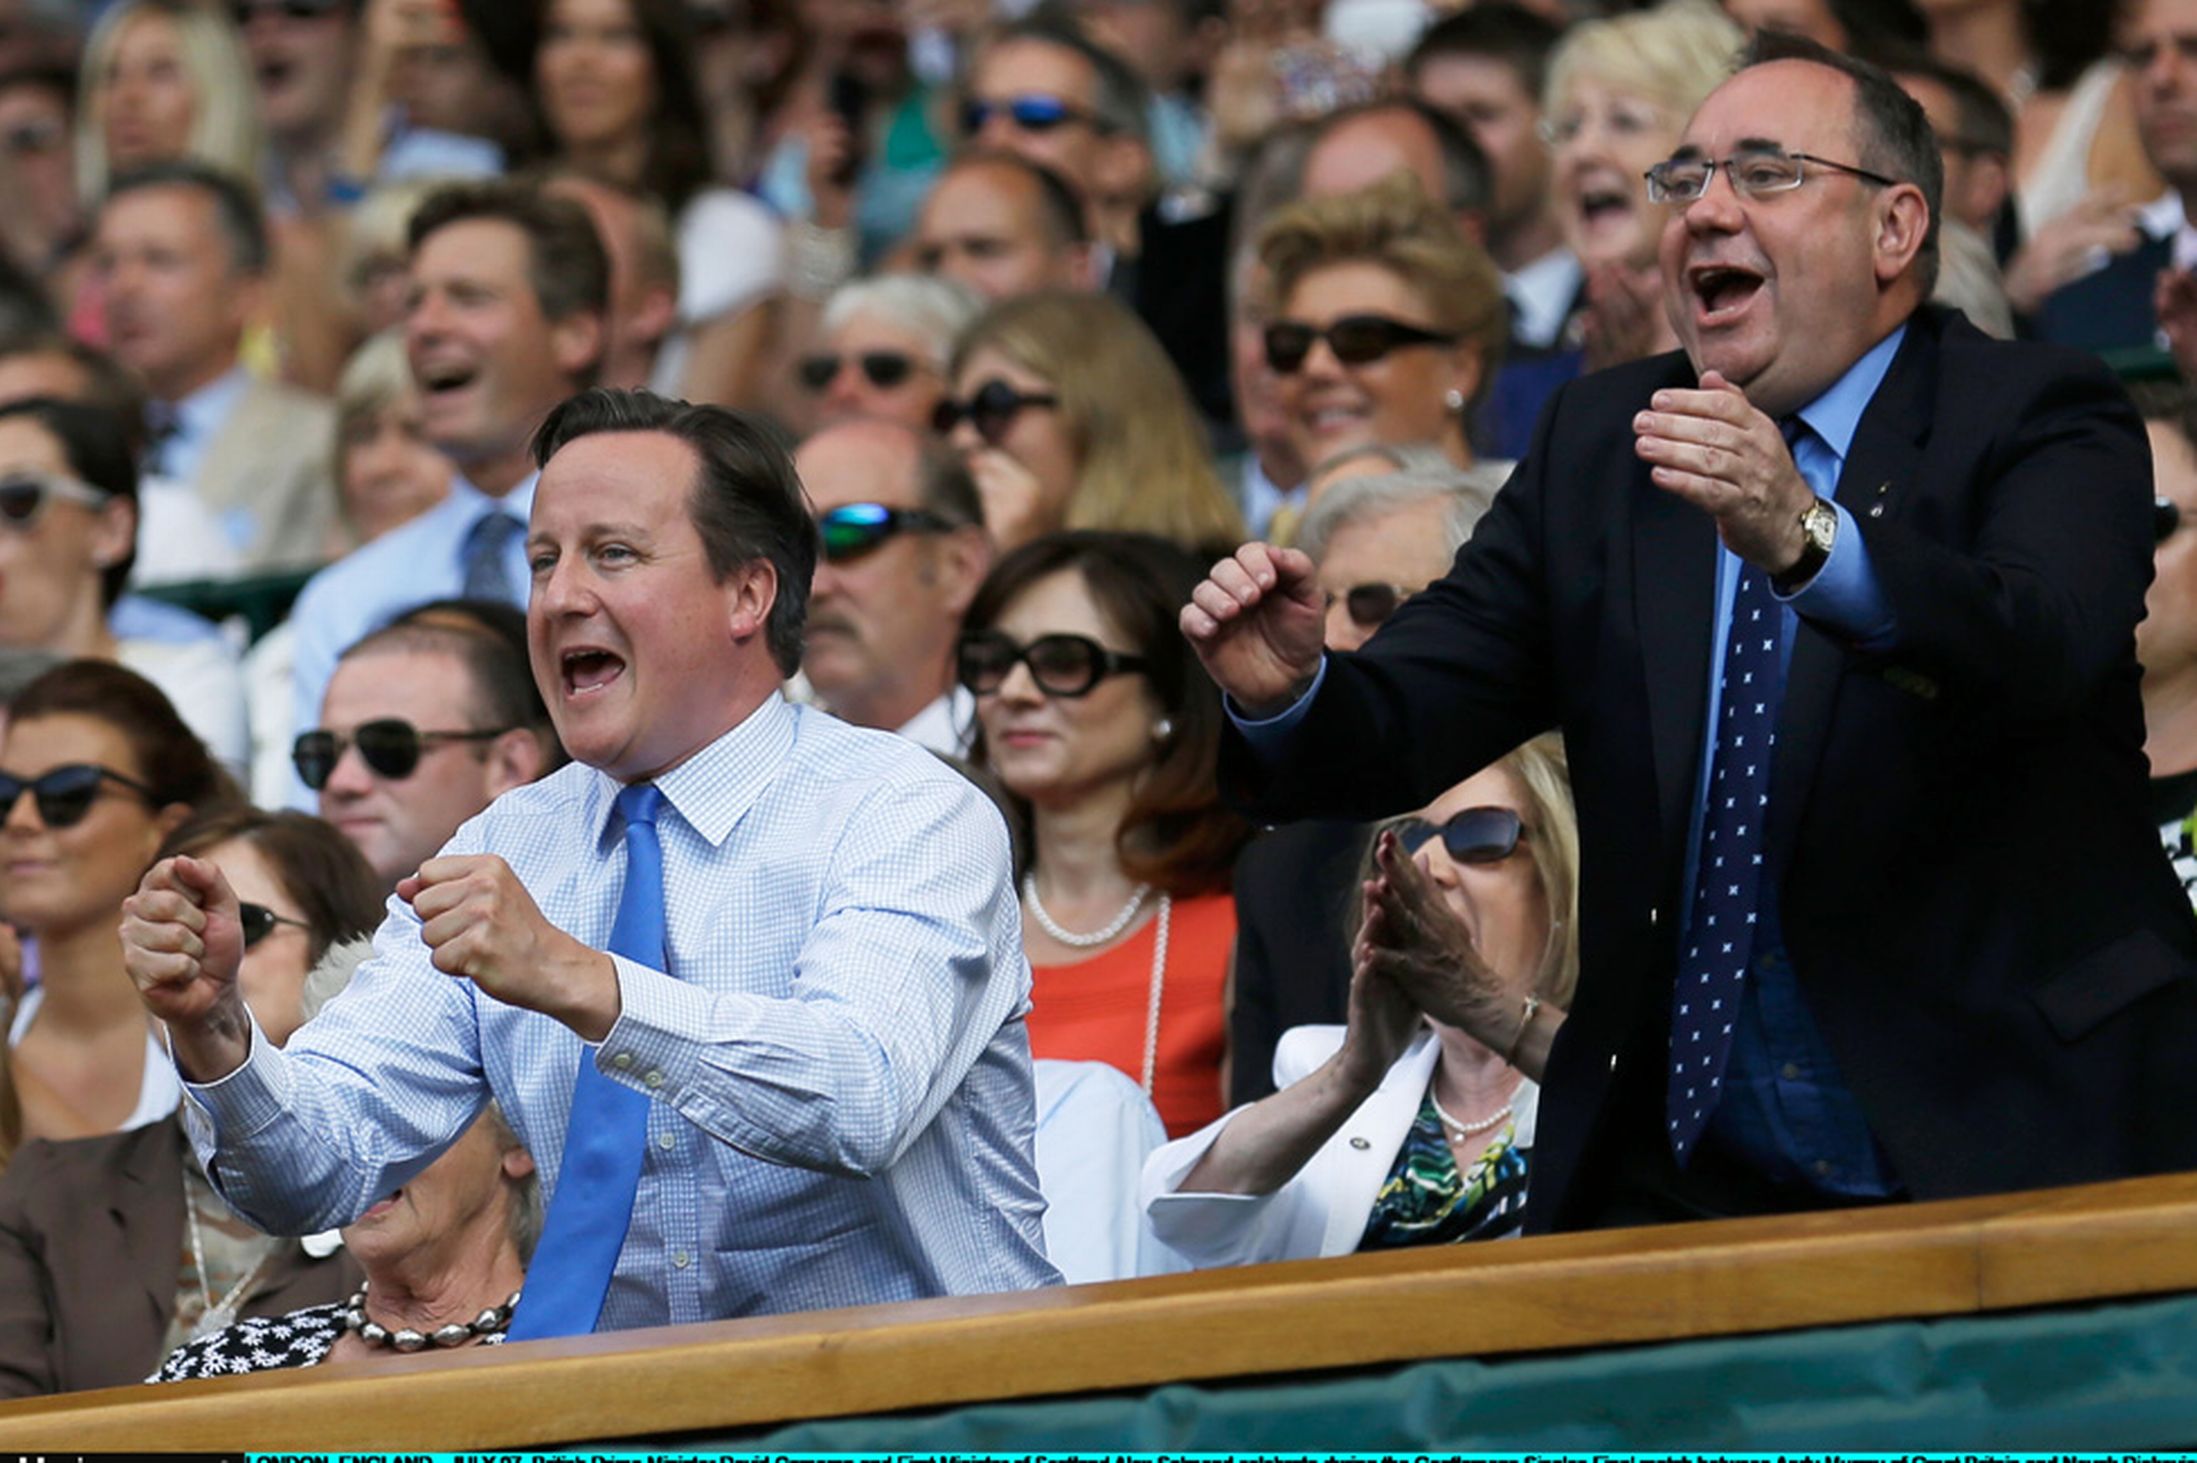 David Cameron and Alex Salmond celebrate Andy Murray winning Wimbledon 2013